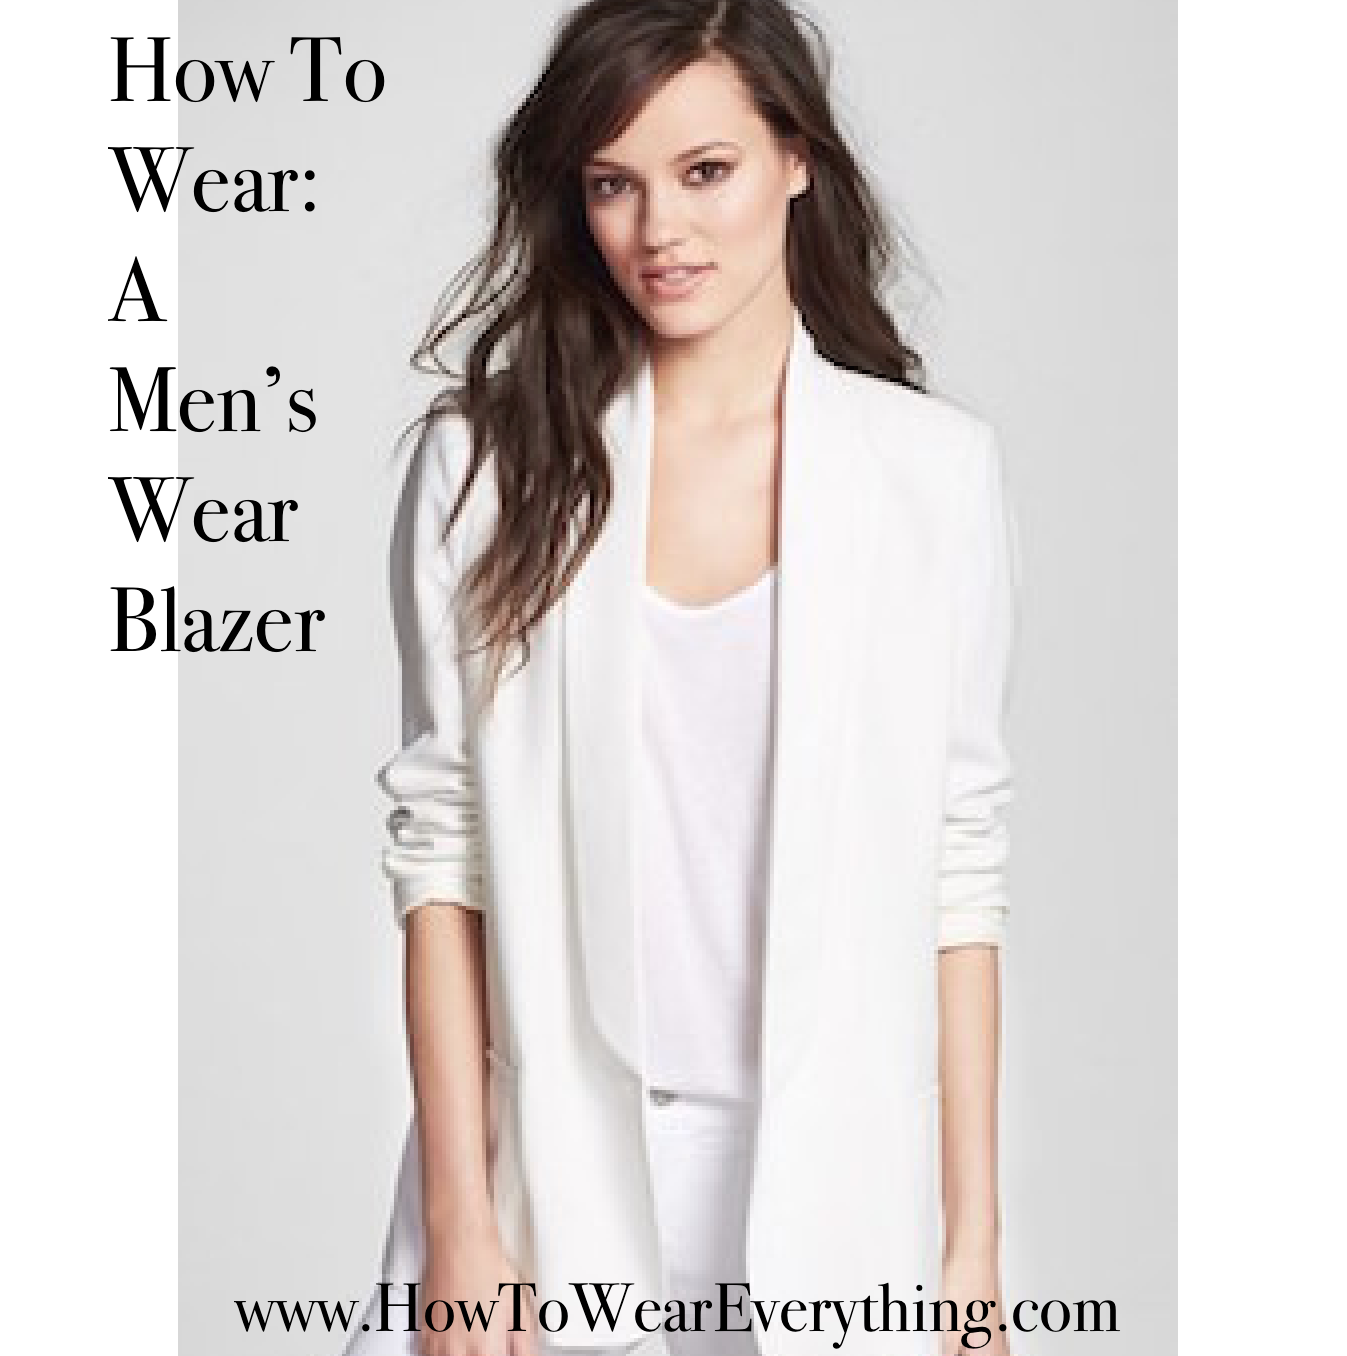 How To Wear: A Men’s Wear Blazer